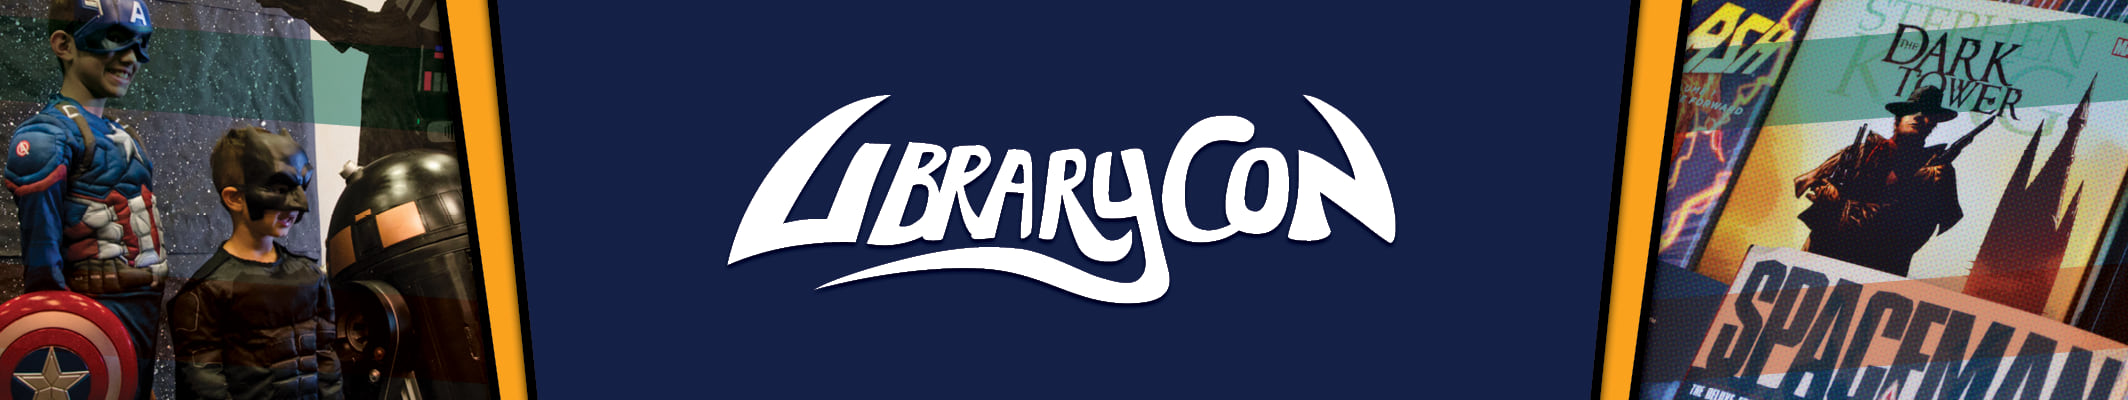 LibraryCon Banner